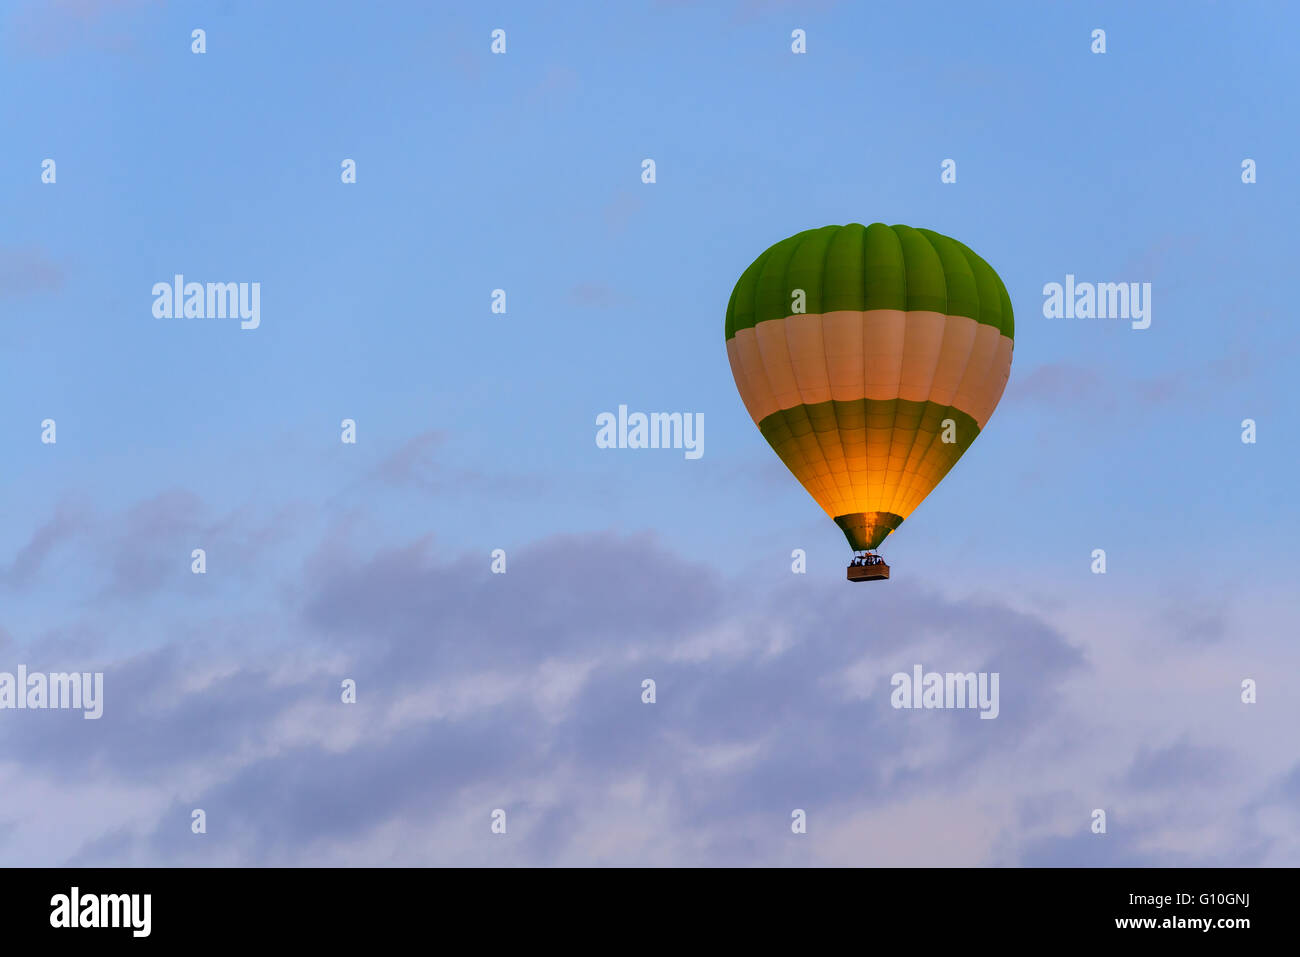 Ballon-Silhouette in den Sonnenaufgang Himmel. Kappadokien, Türkei Stockfoto